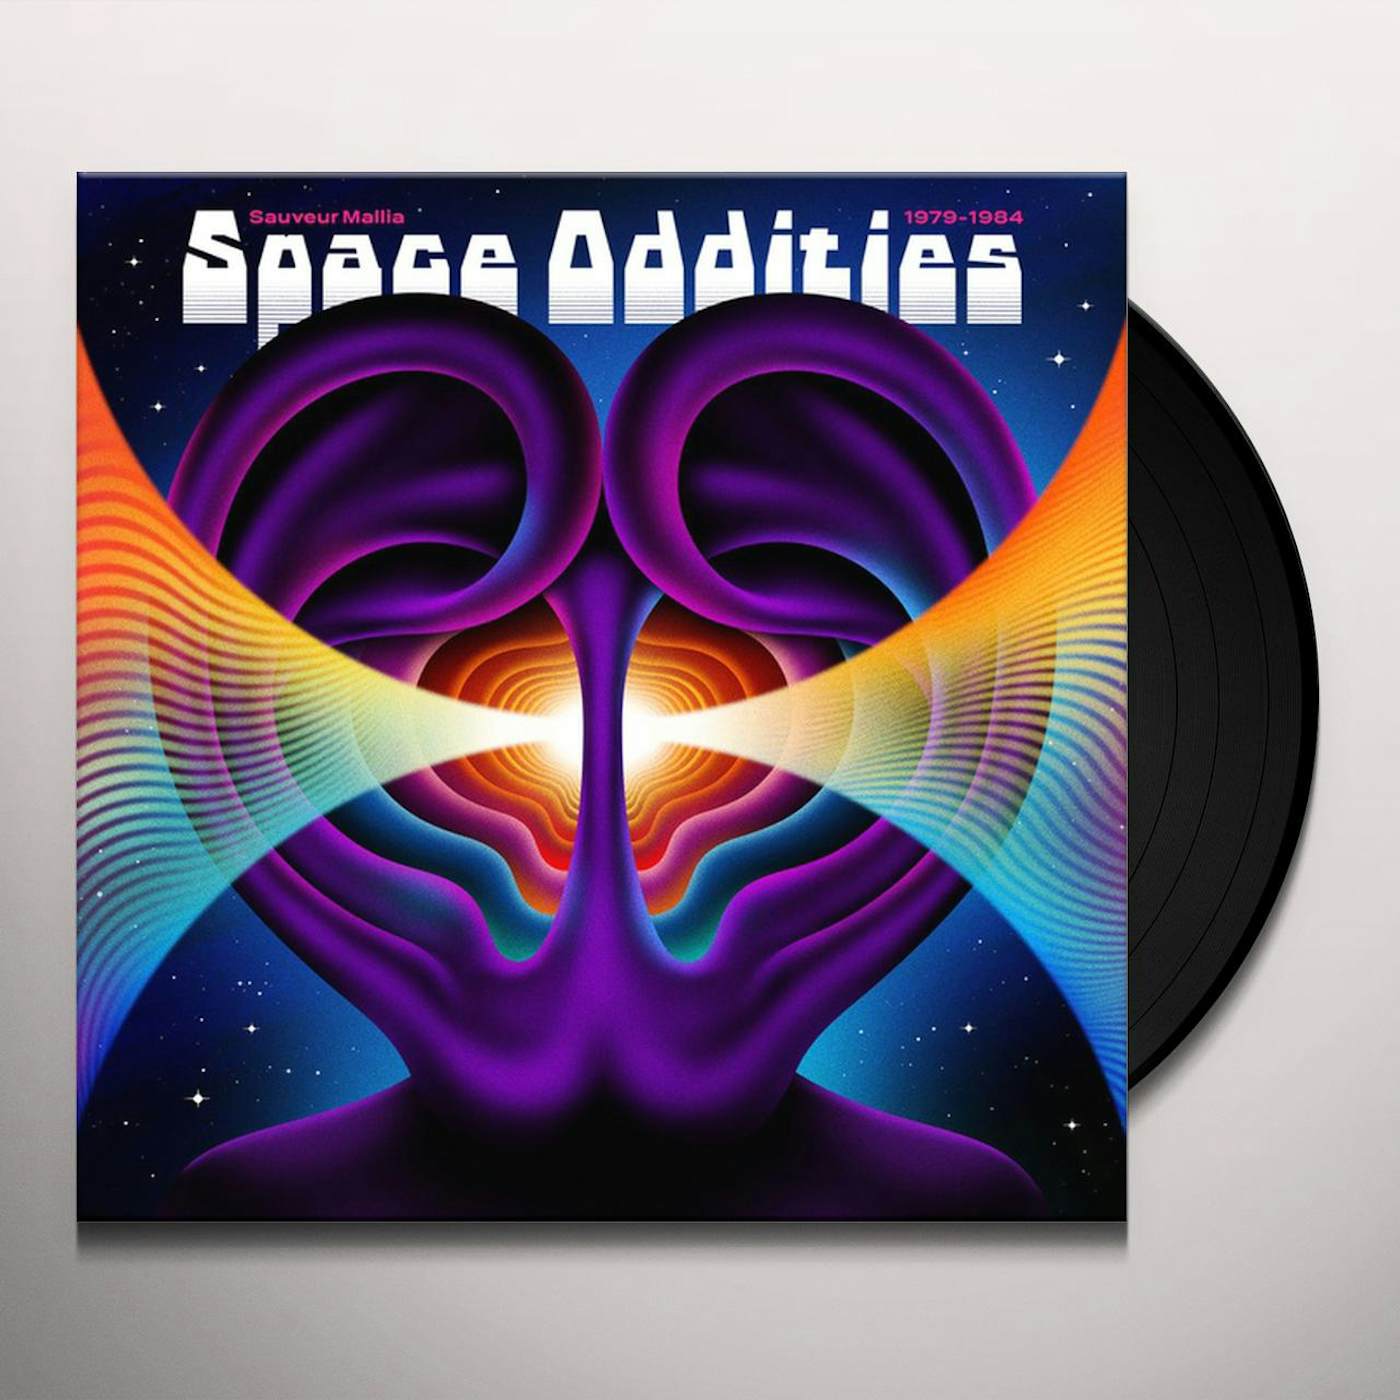 Sauveur Mallia SPACE ODDITIES 1979-1984 Vinyl Record